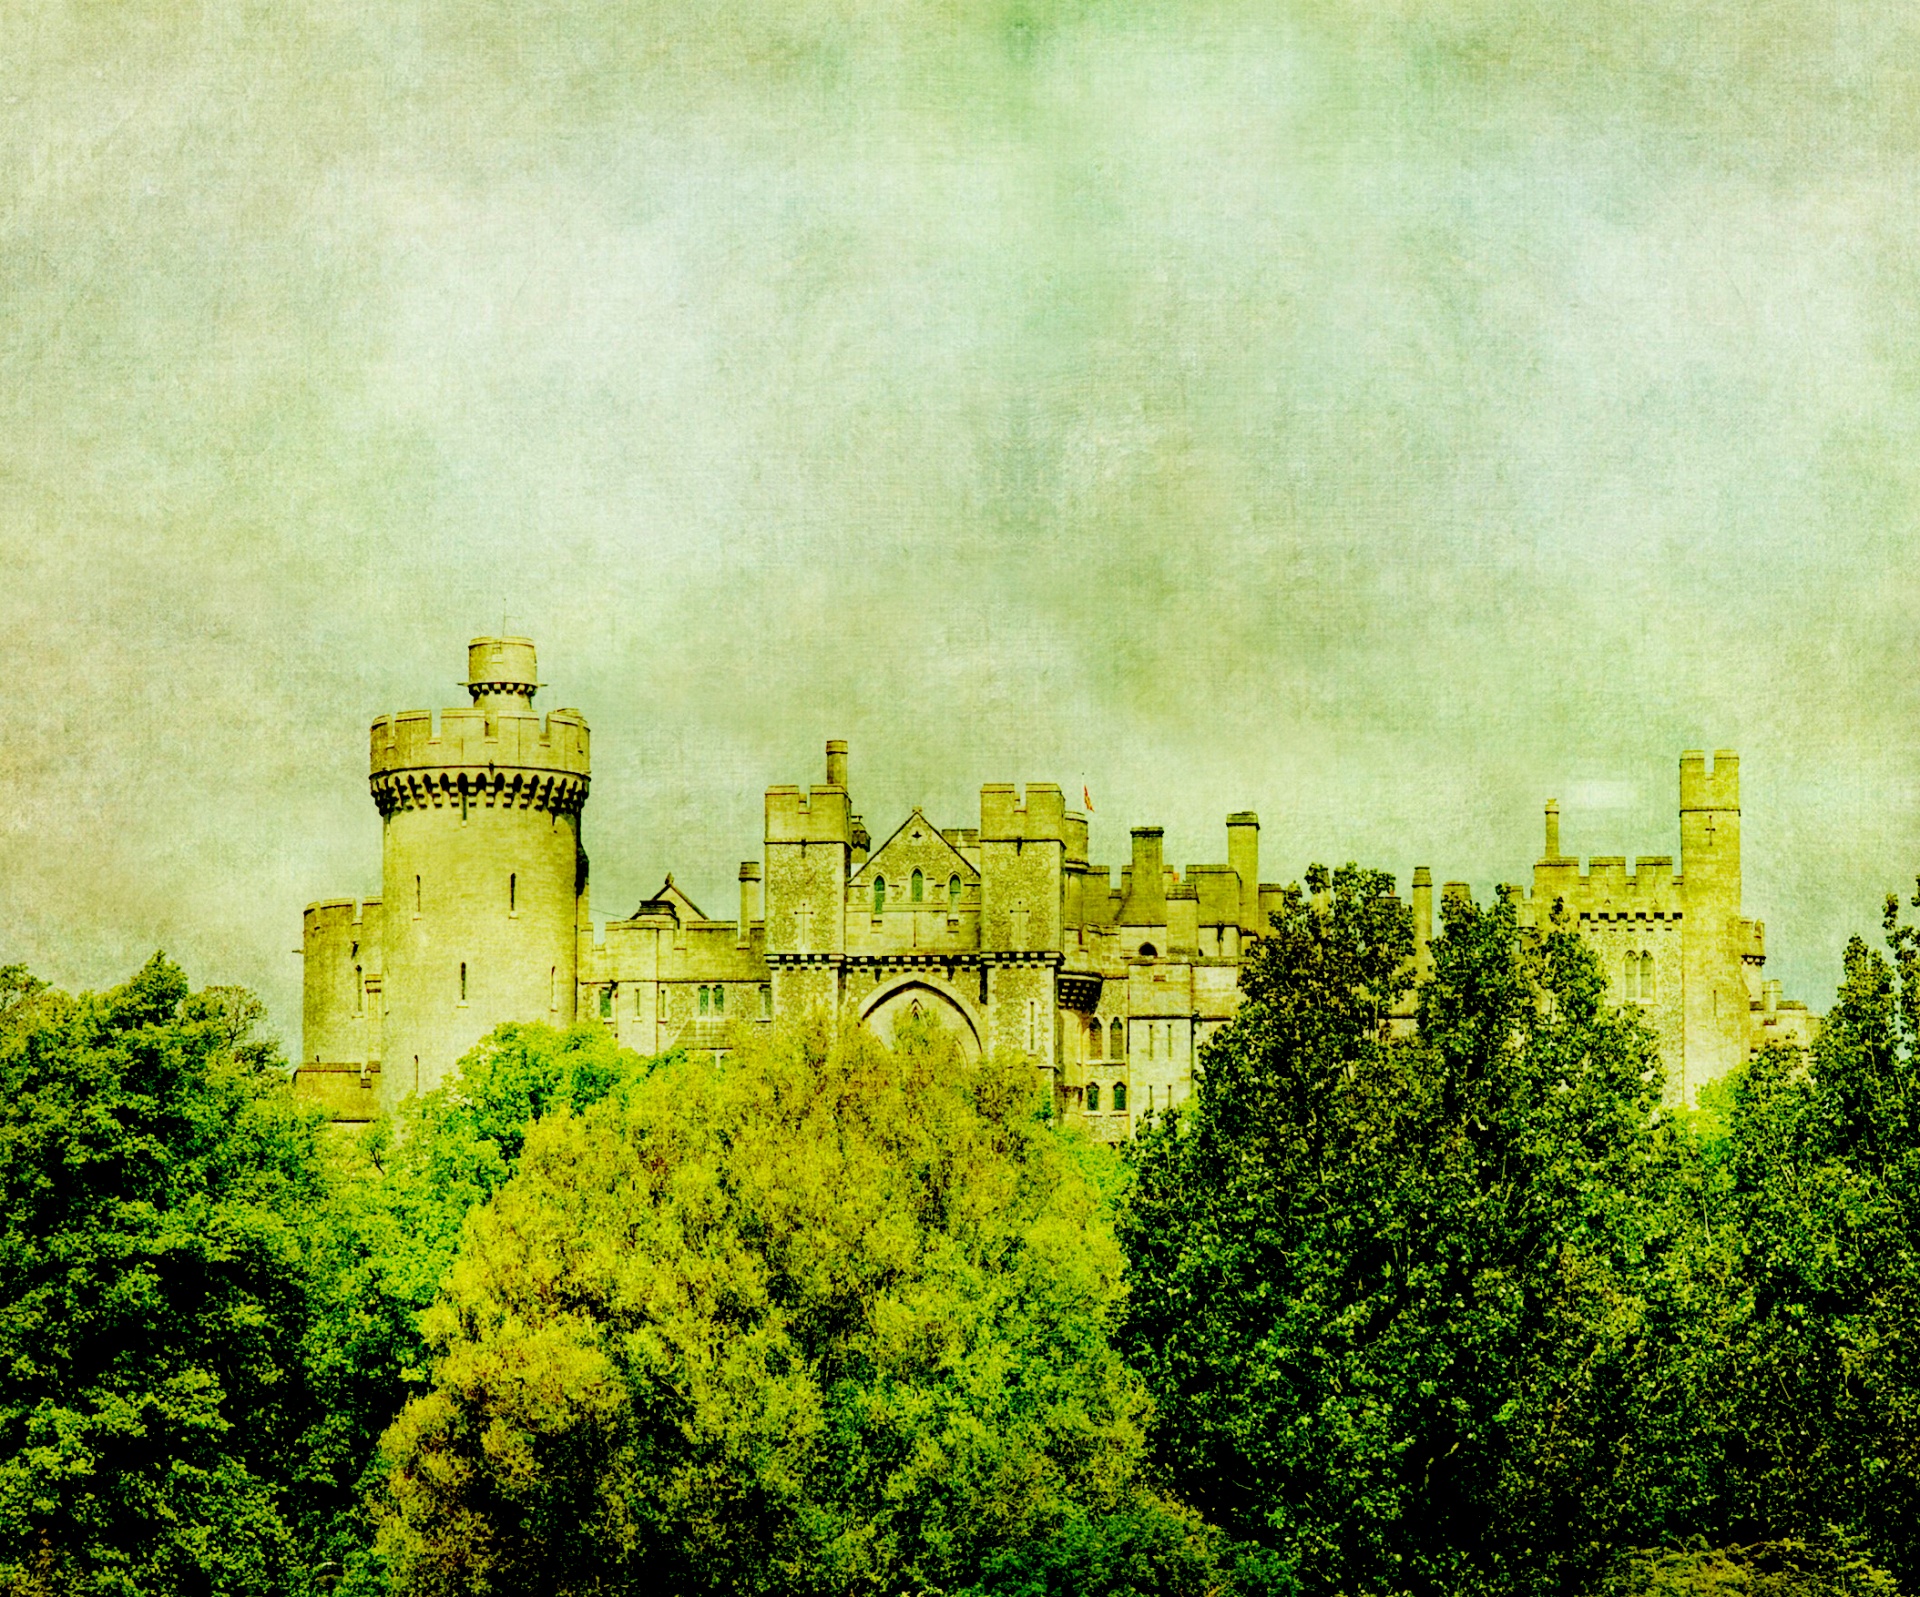 Vintage illustration of Arudenl Castle in Sussex, England